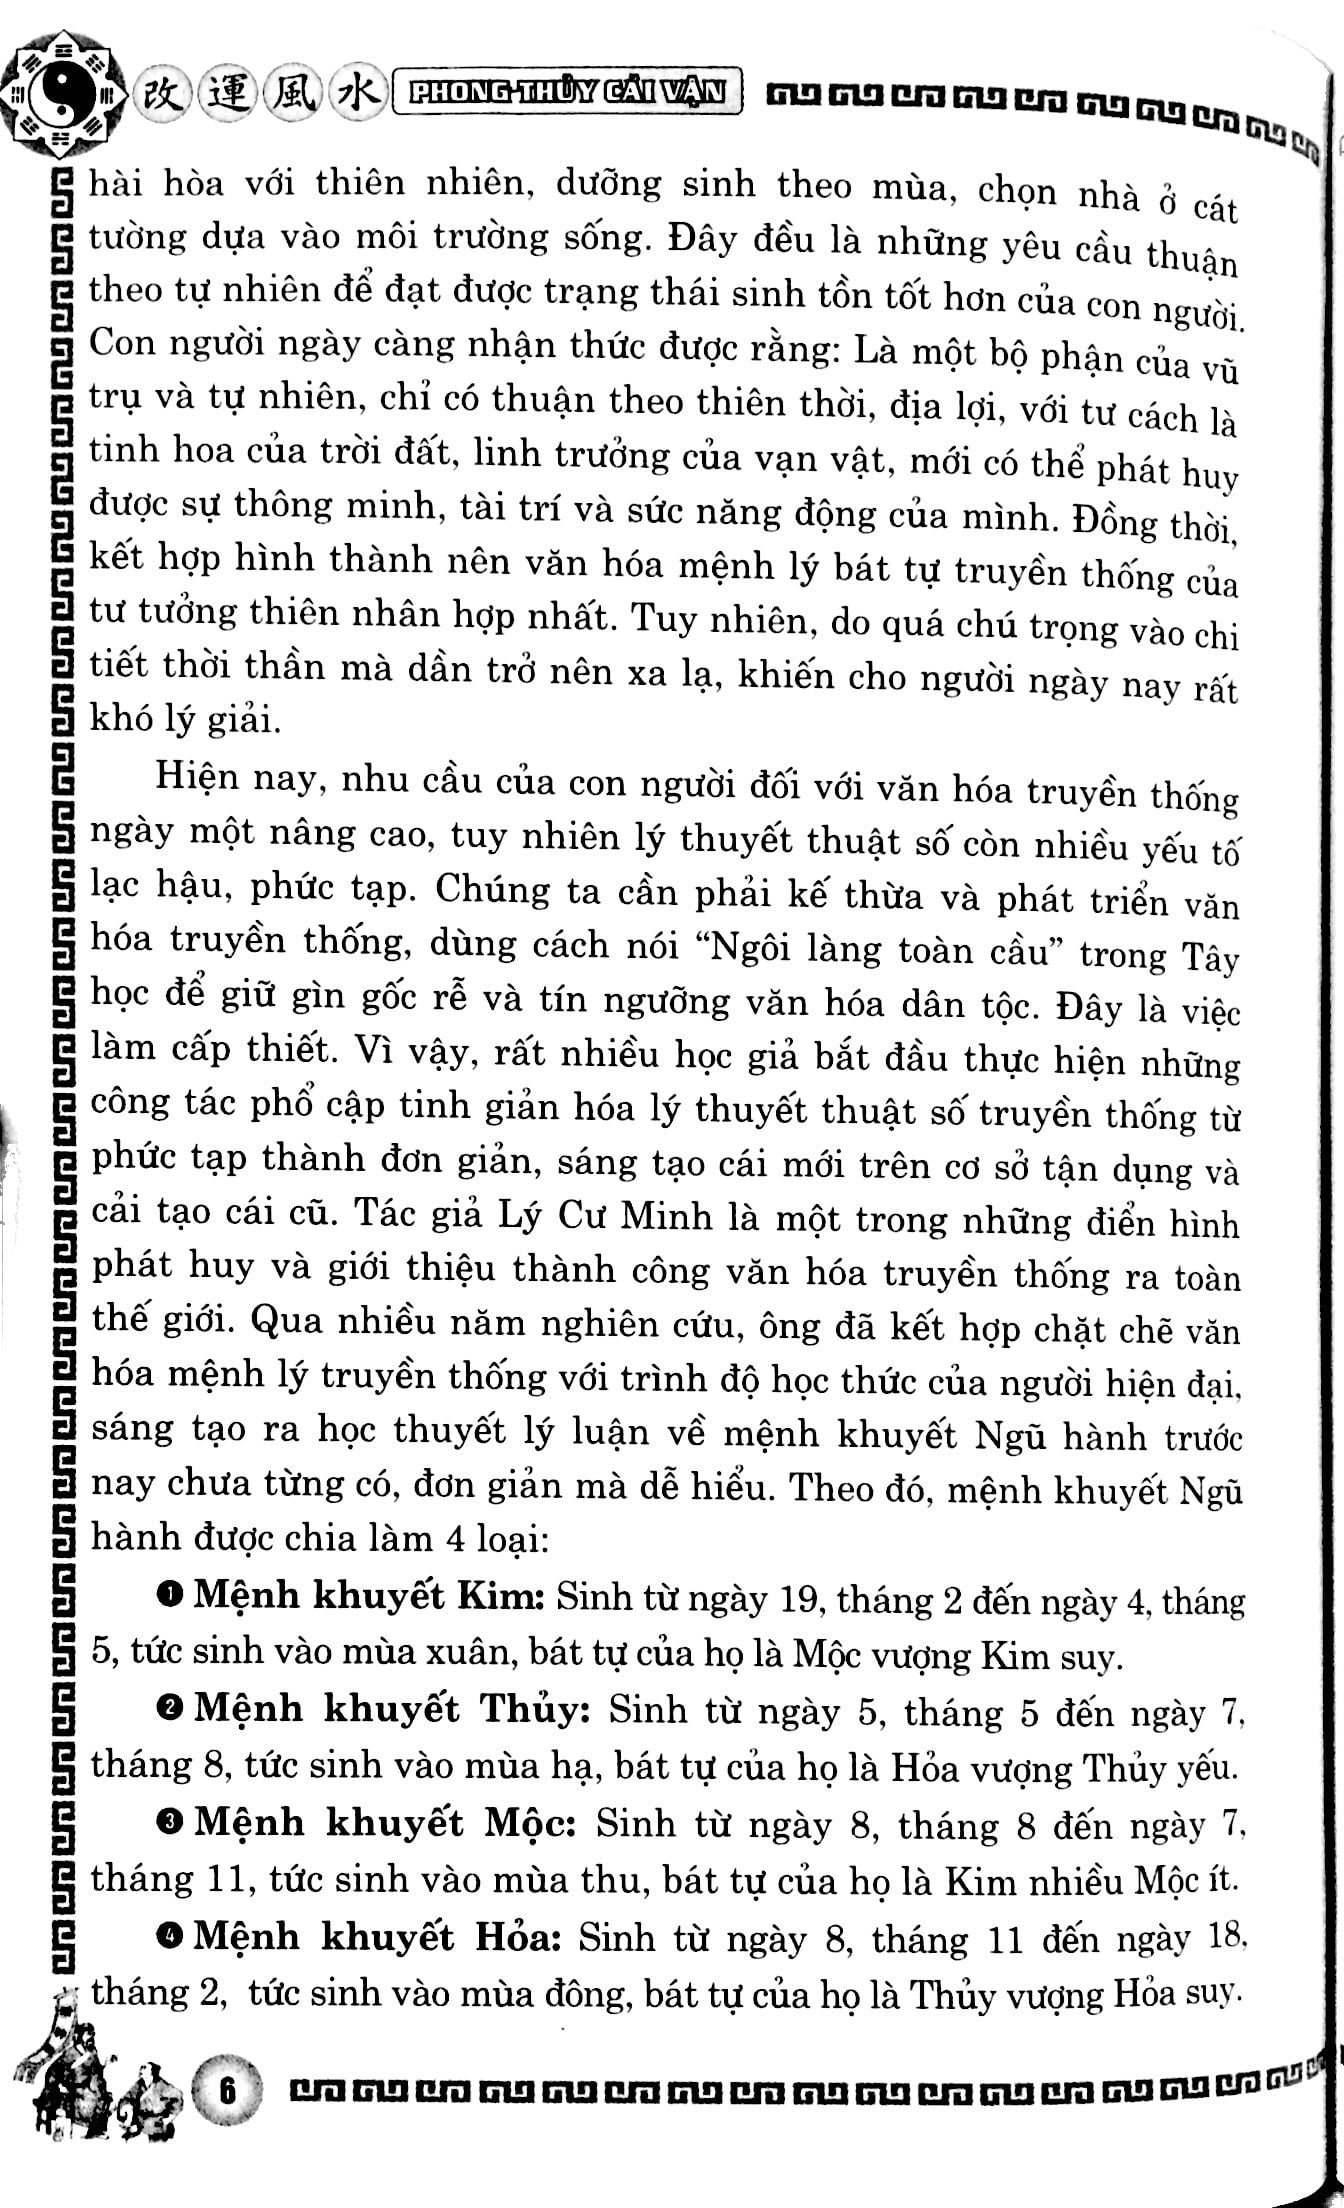 Phong Thủy Cải Vận - Dành Cho Mệnh Khuyết Kim, Thủy Quyển Xuân, Hạ PDF